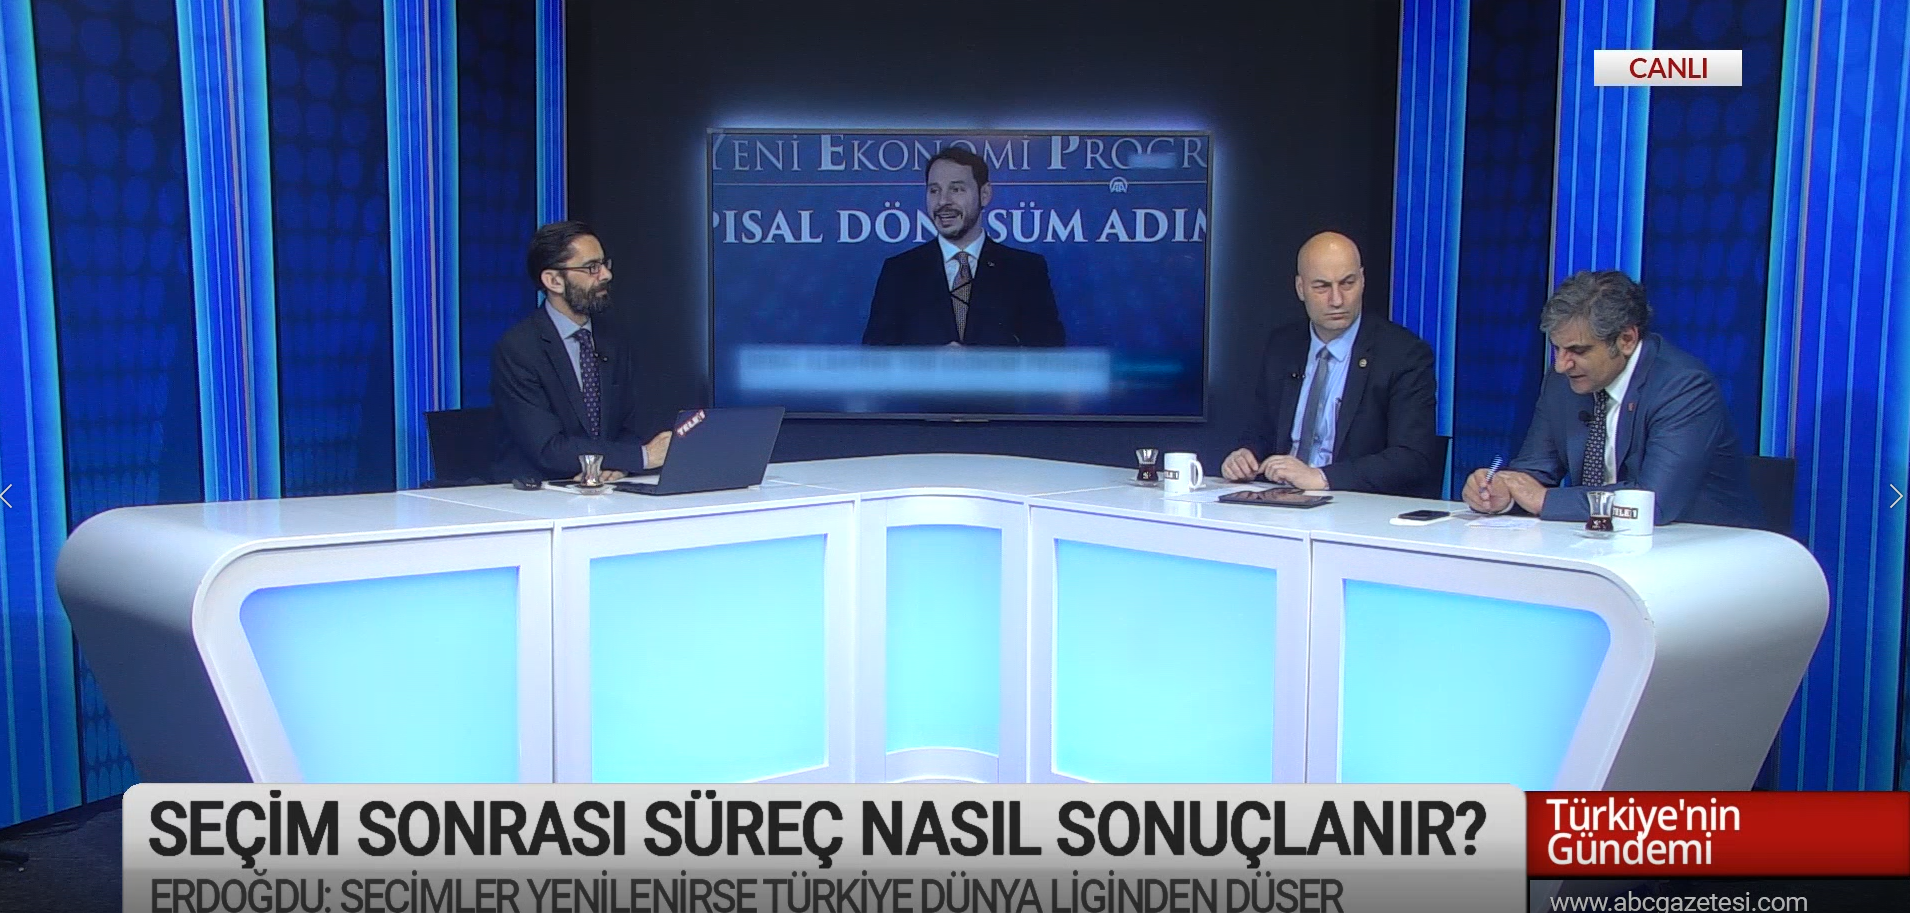 Normalleşme süreci için gözler YSK’ya çevrildi – Türkiye’nin Gündemi (11 Nisan 2019)